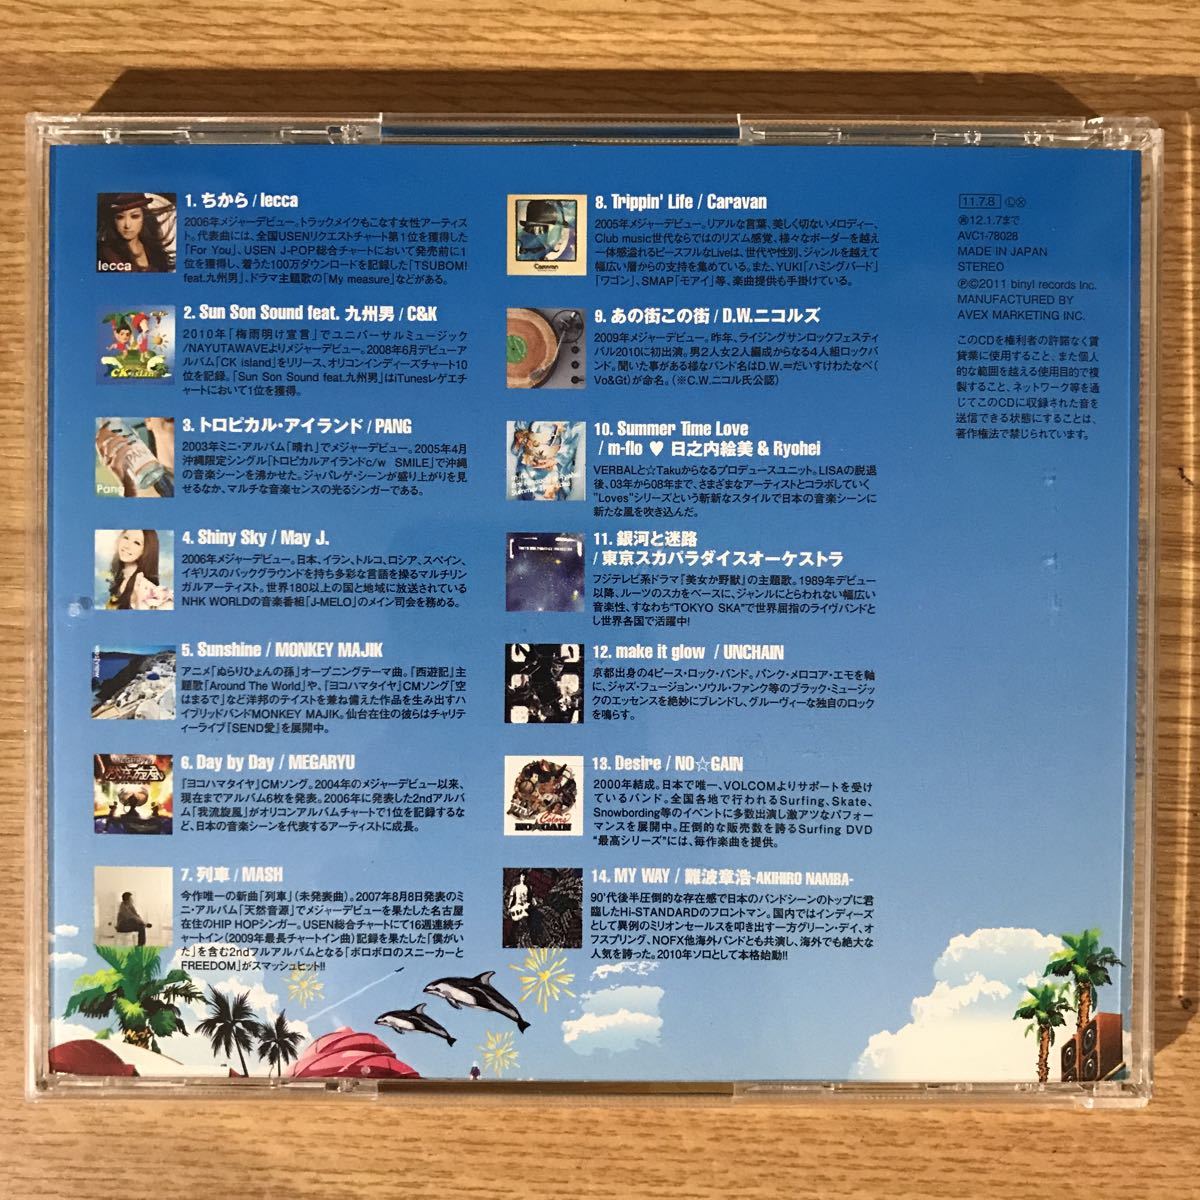 ヤフオク 2 中古cd100円 ムラスポ Music Life Vol 3